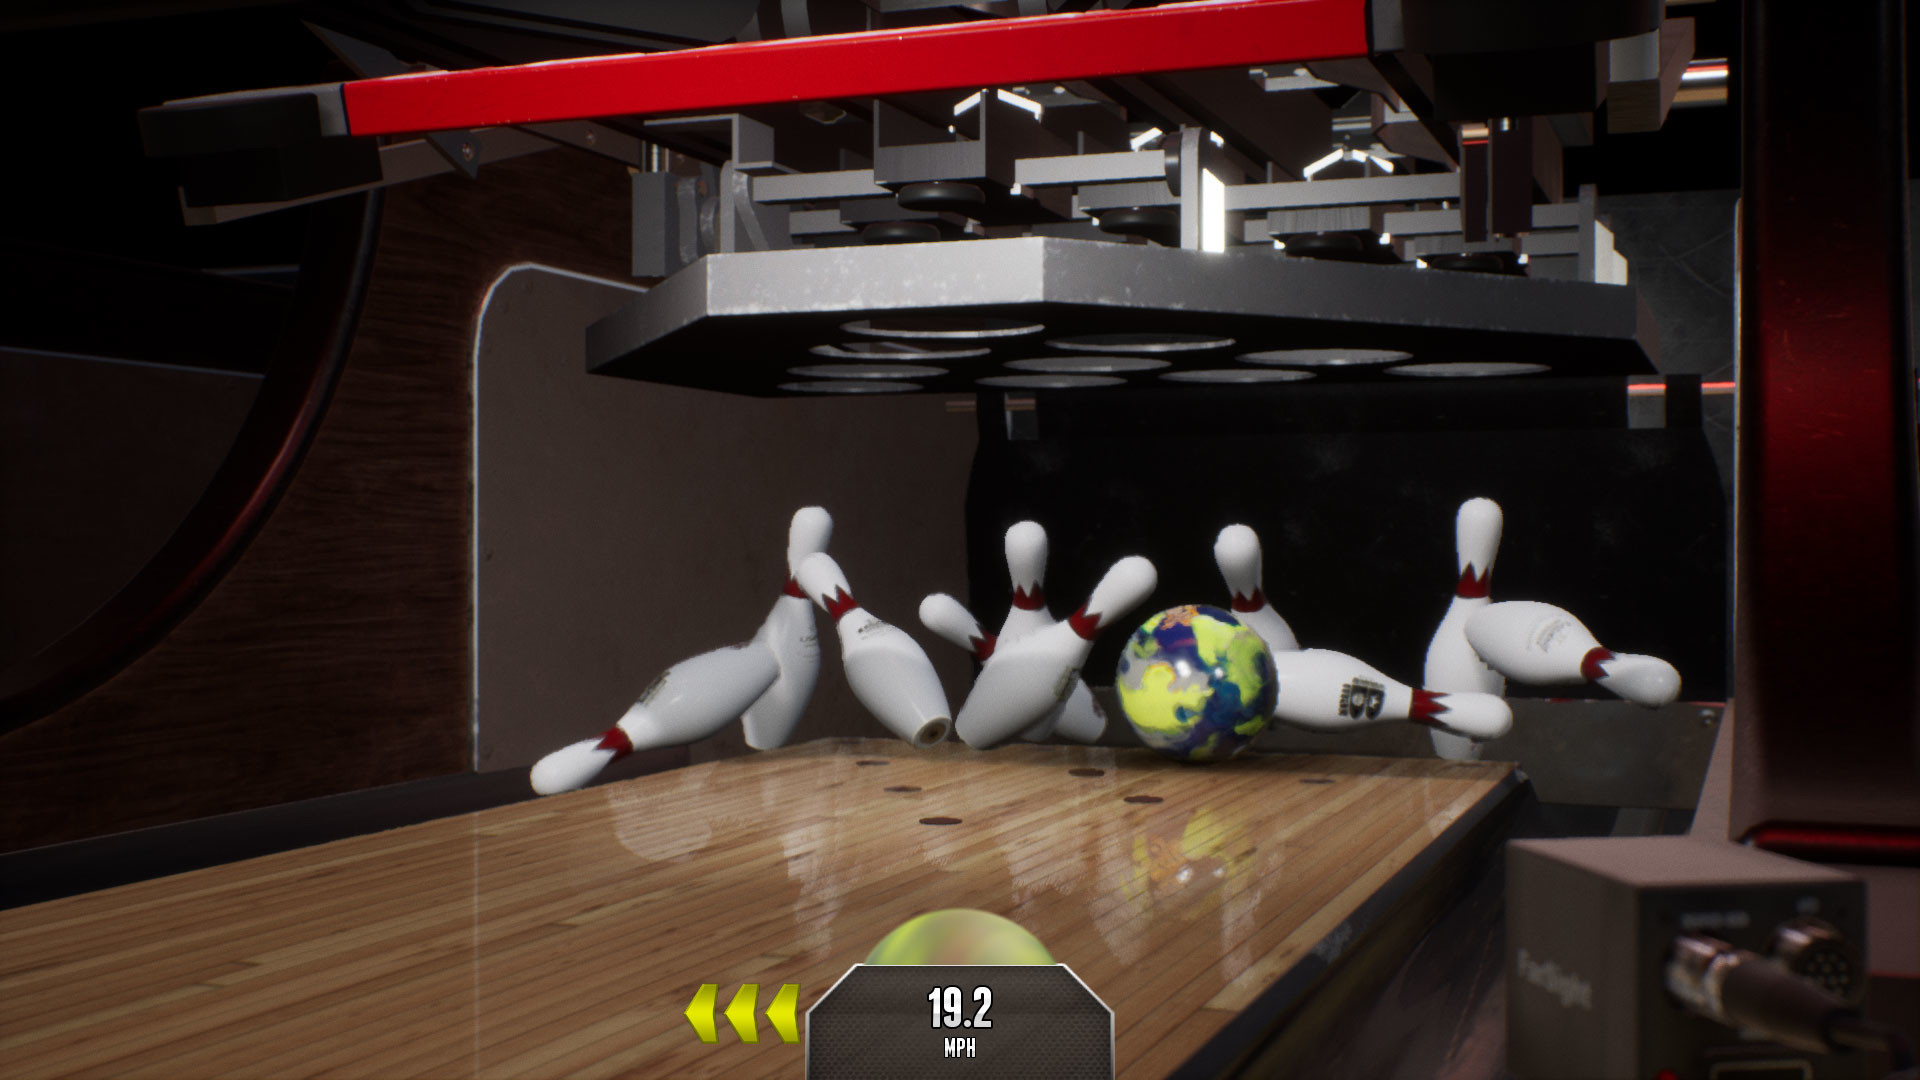 PBA Pro Bowling Free Download